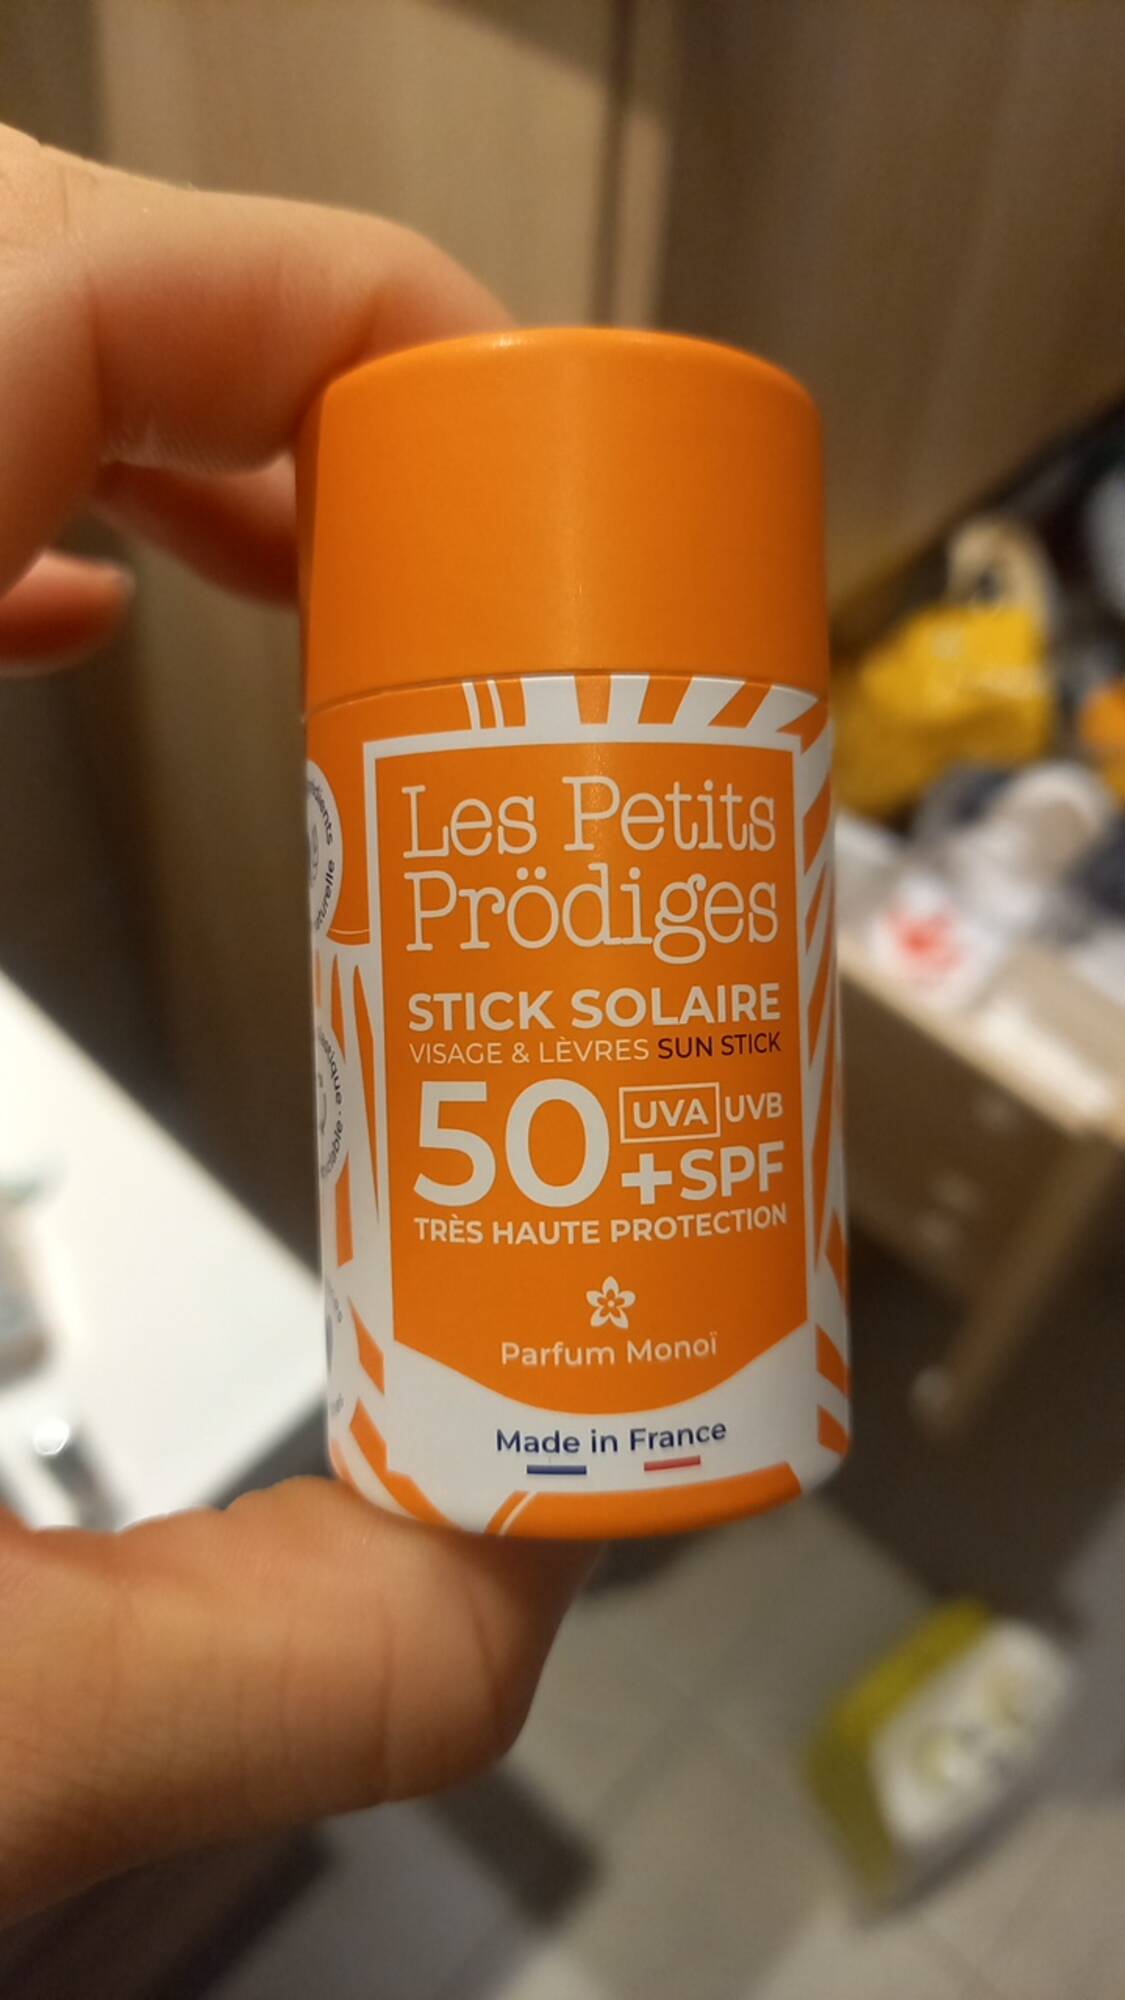 LES PETITS PRÖDIGES - Stick solaire visage & lèvres SPF 50+ 